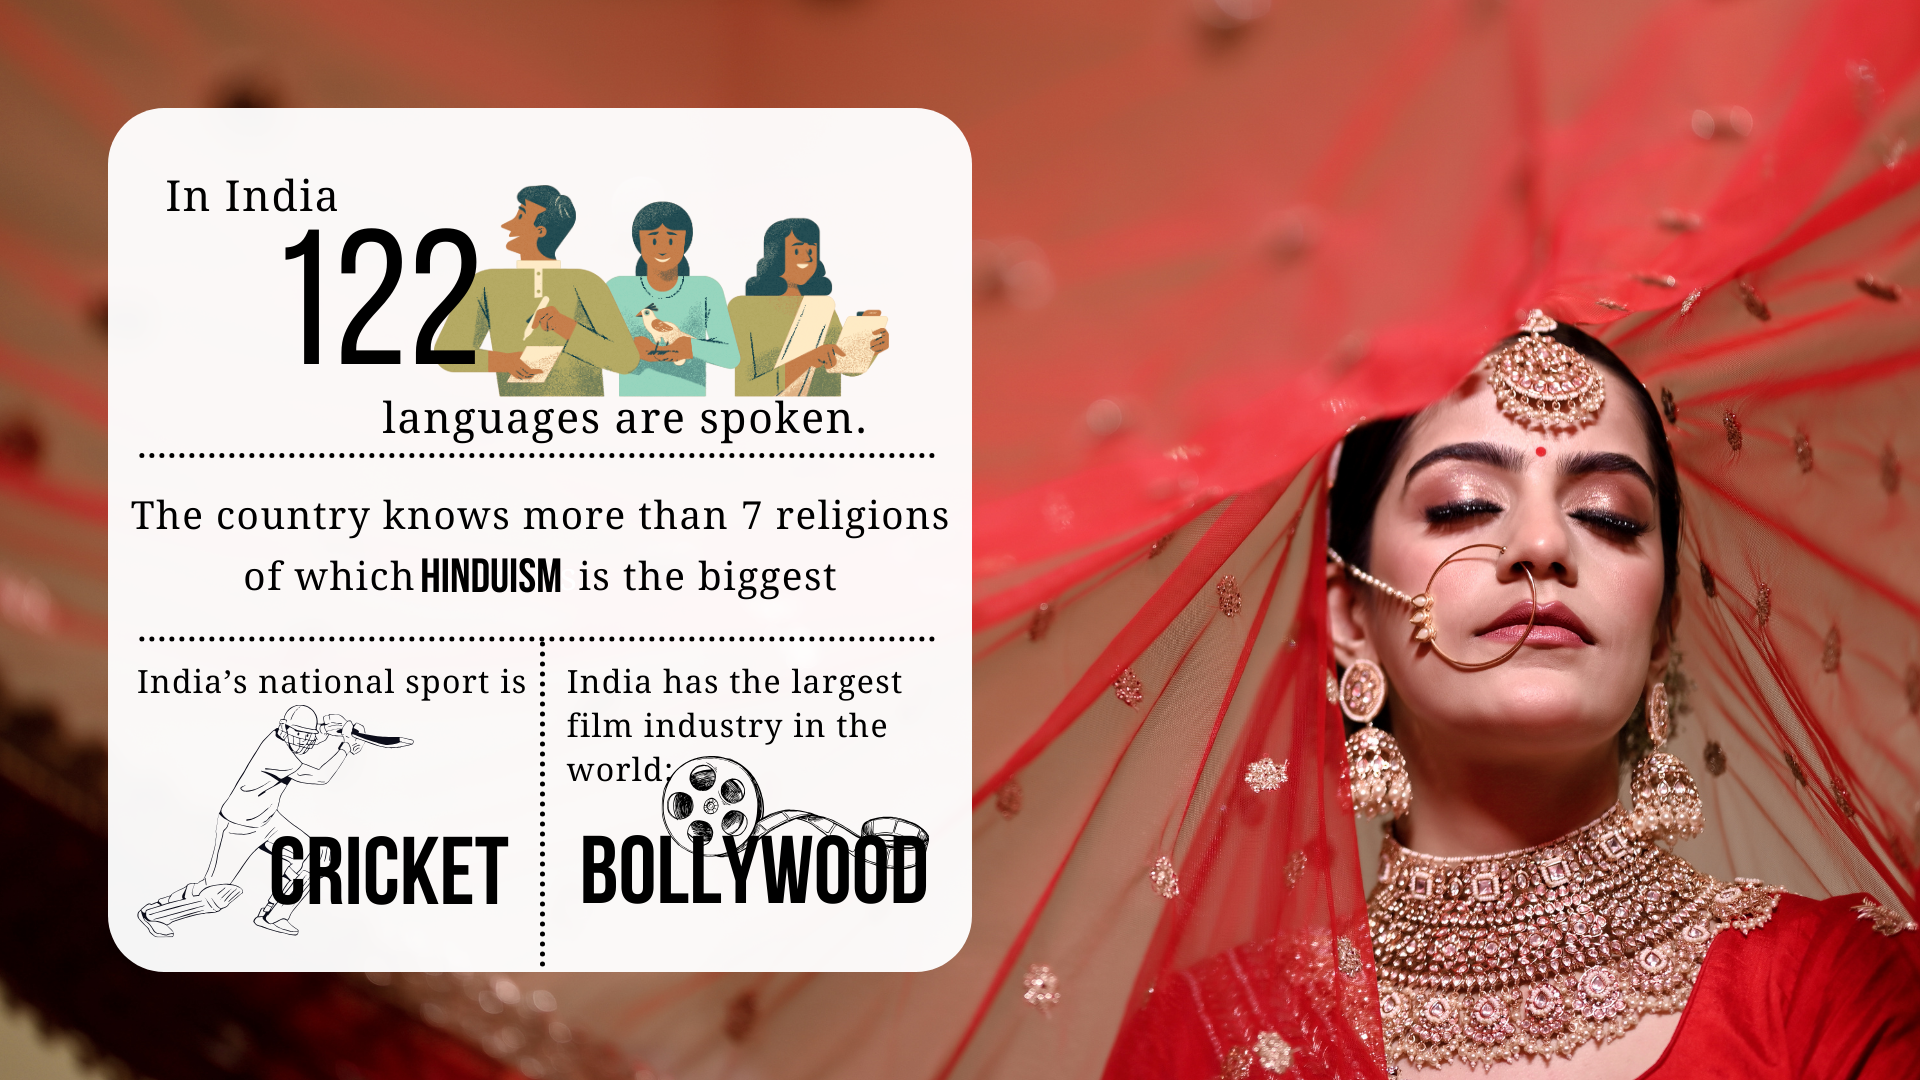 I Indien tales der 122 sprog, der er 6 hovedreligioner, hvoraf hinduismen er den største, Indiens nationalsport er cricket, og landet har verdens største filmindustri: Bollywood.